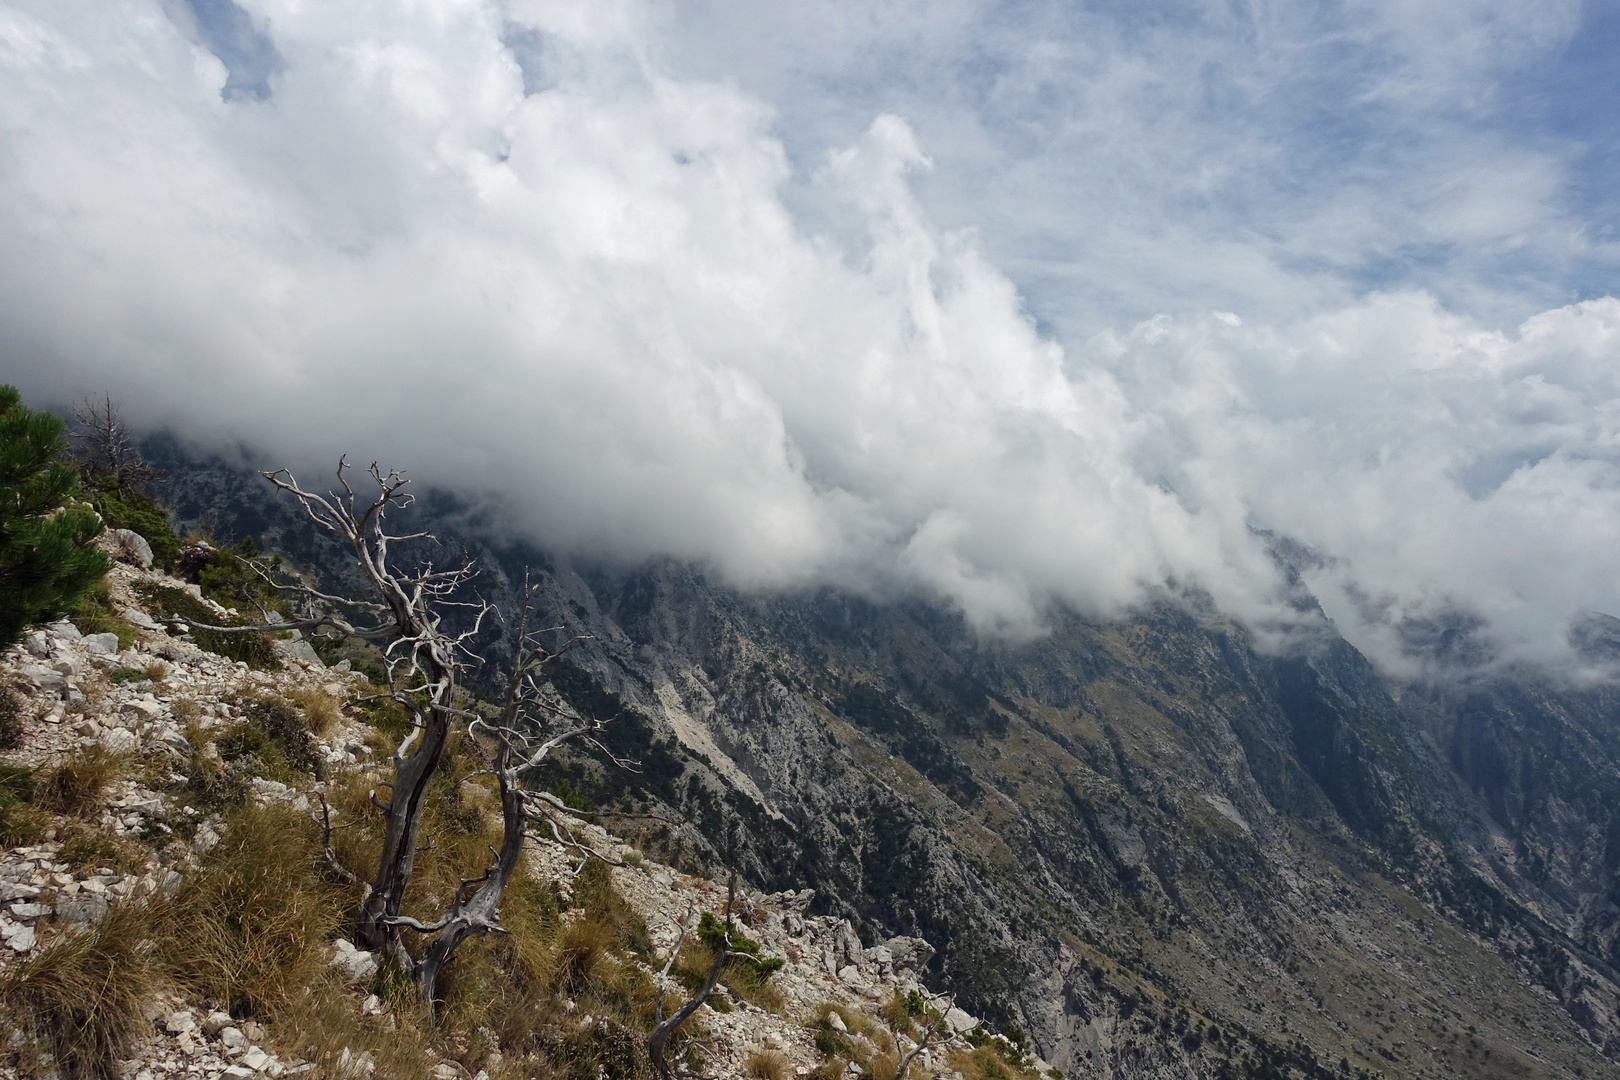 Wolkenverhangen die Gipfel des Nationalparks Llogara